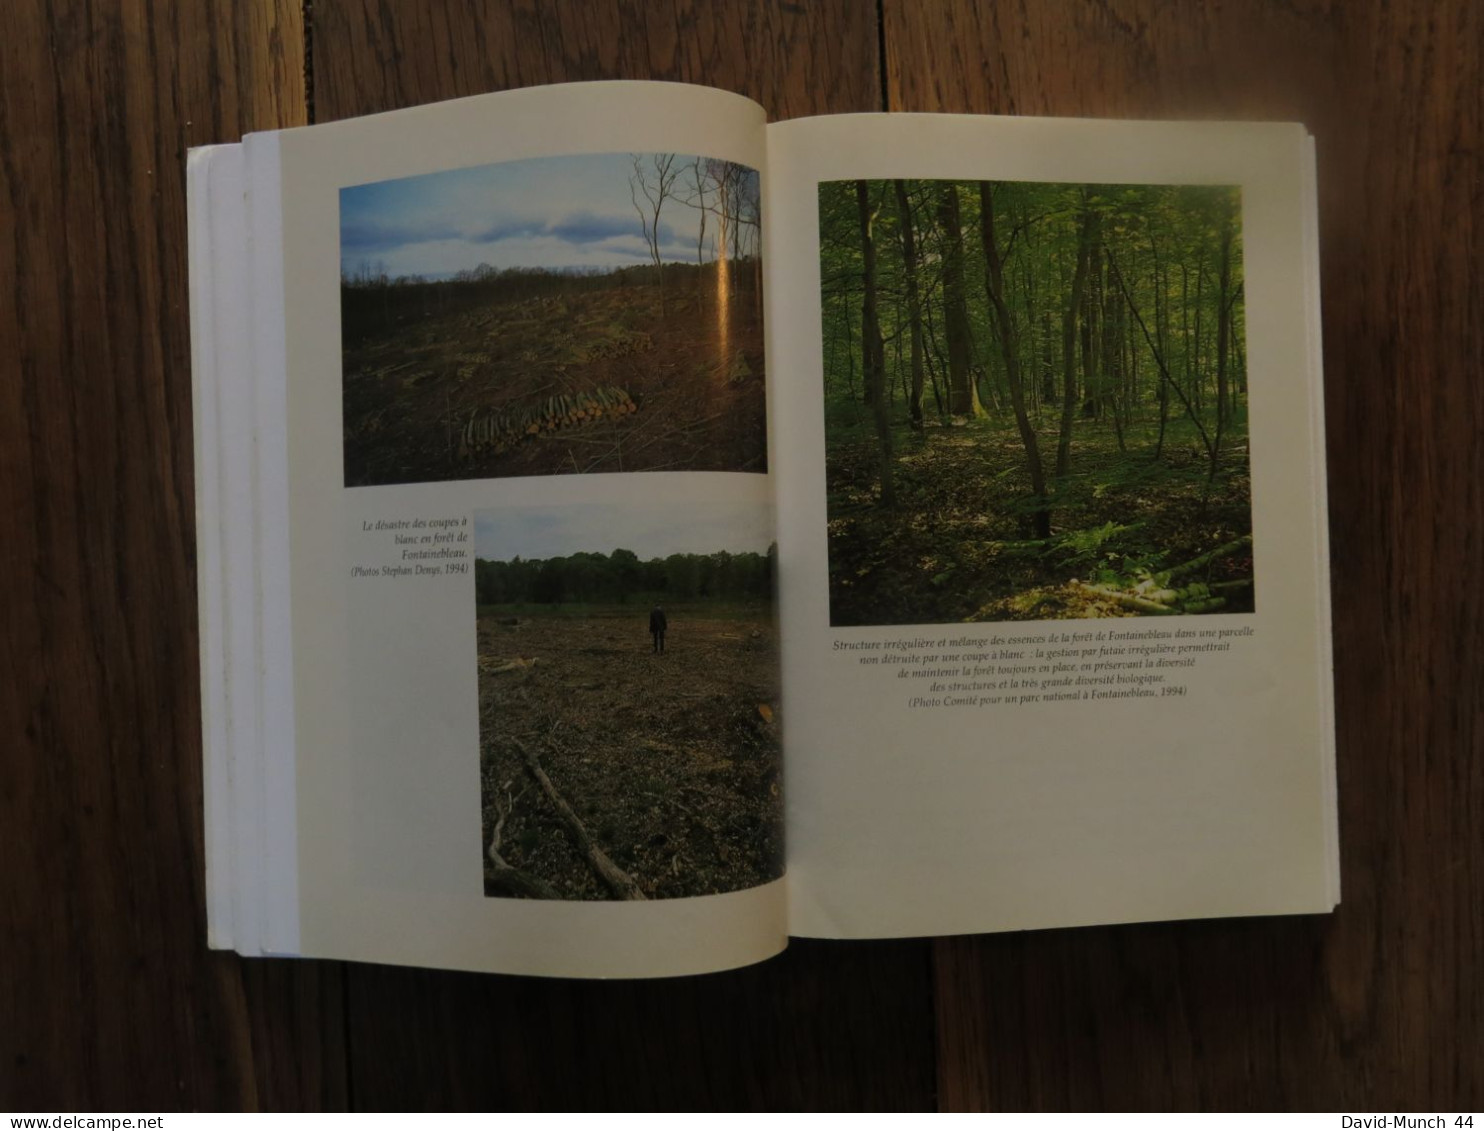 Les arbres qui cachent la forêt, La gestion forestière à l'épreuve de l'écologie de Didier Carbiener. Edisud. 1995